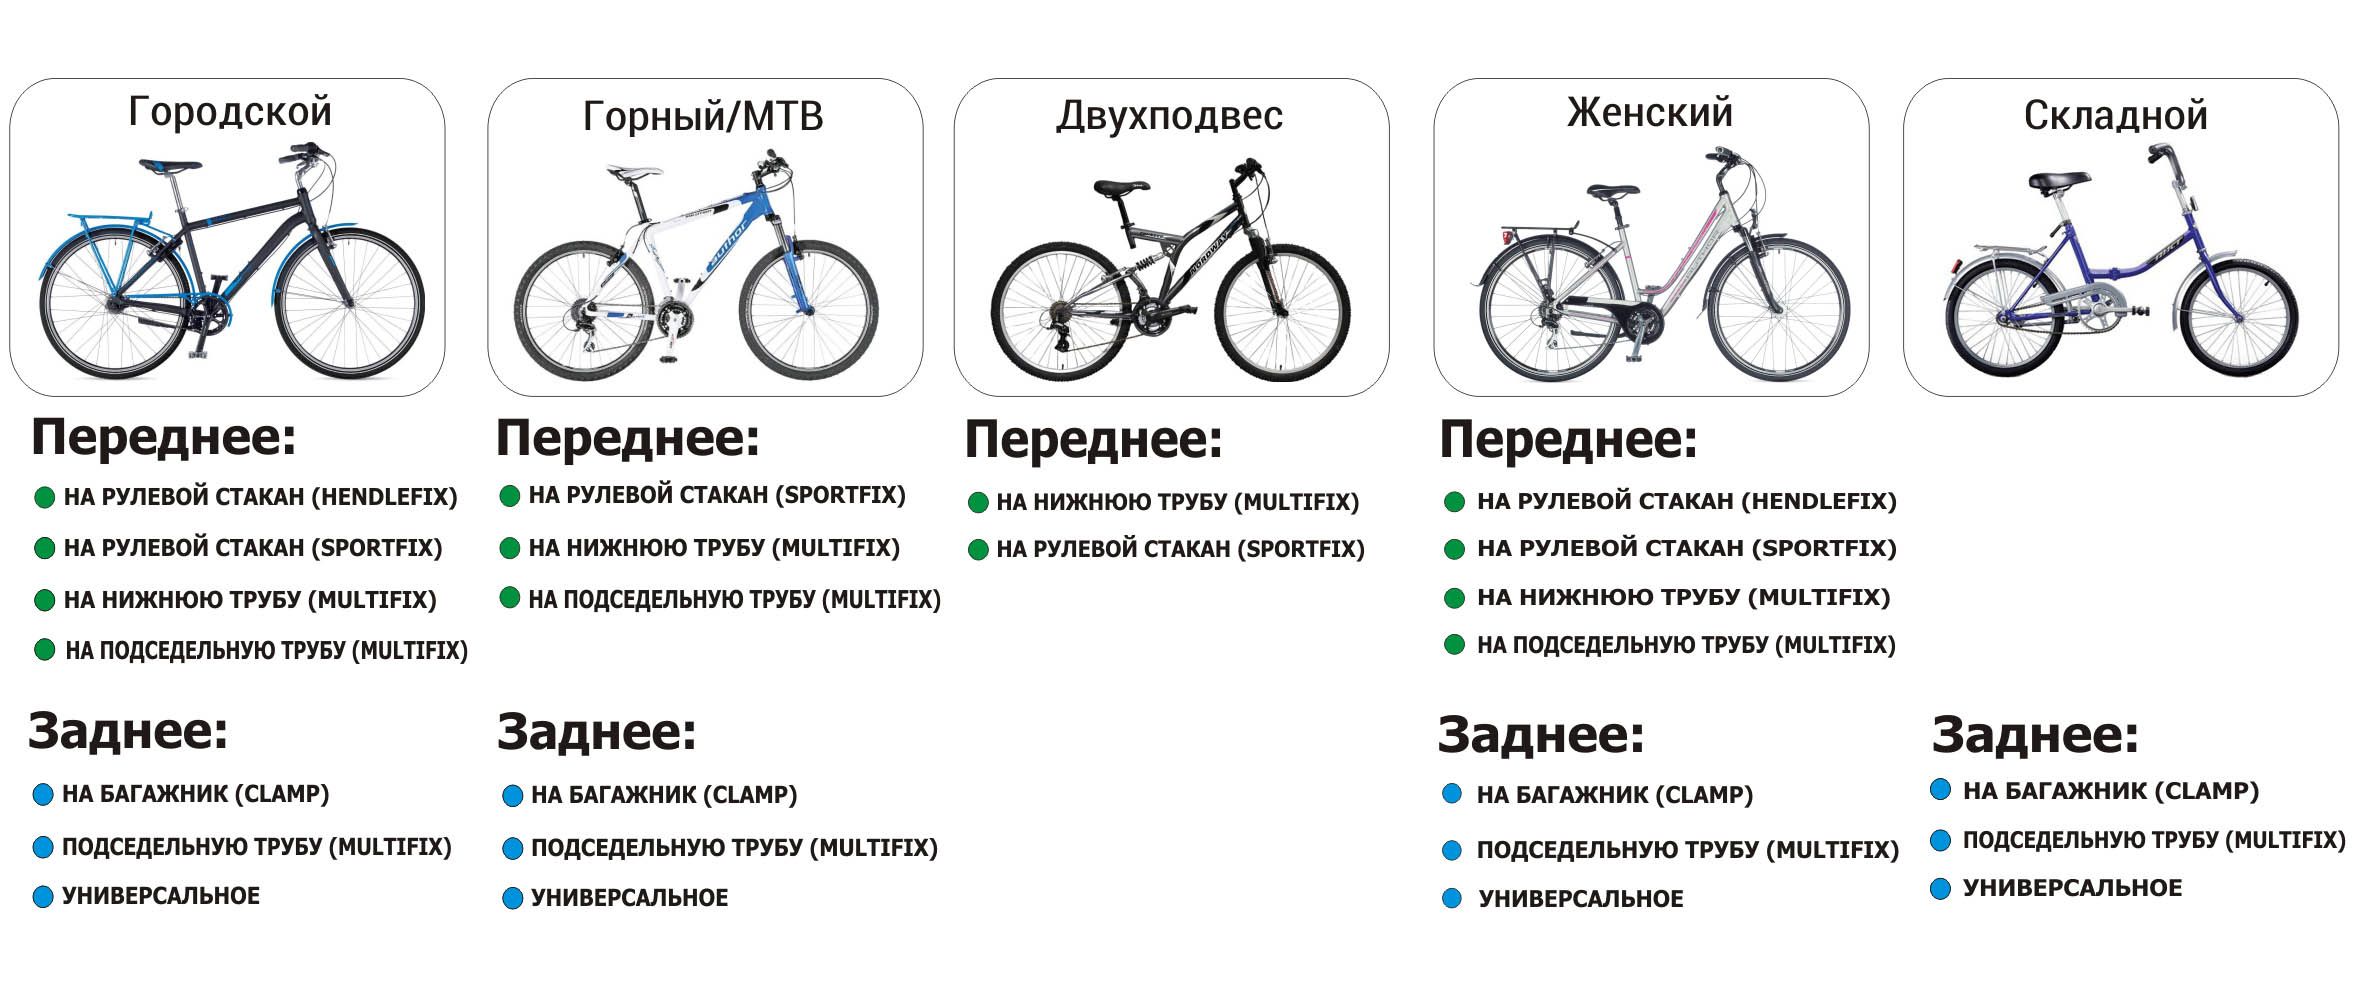 Шоссейный гибрид: в чем отличия от других велосипедов? - все о велосипедах